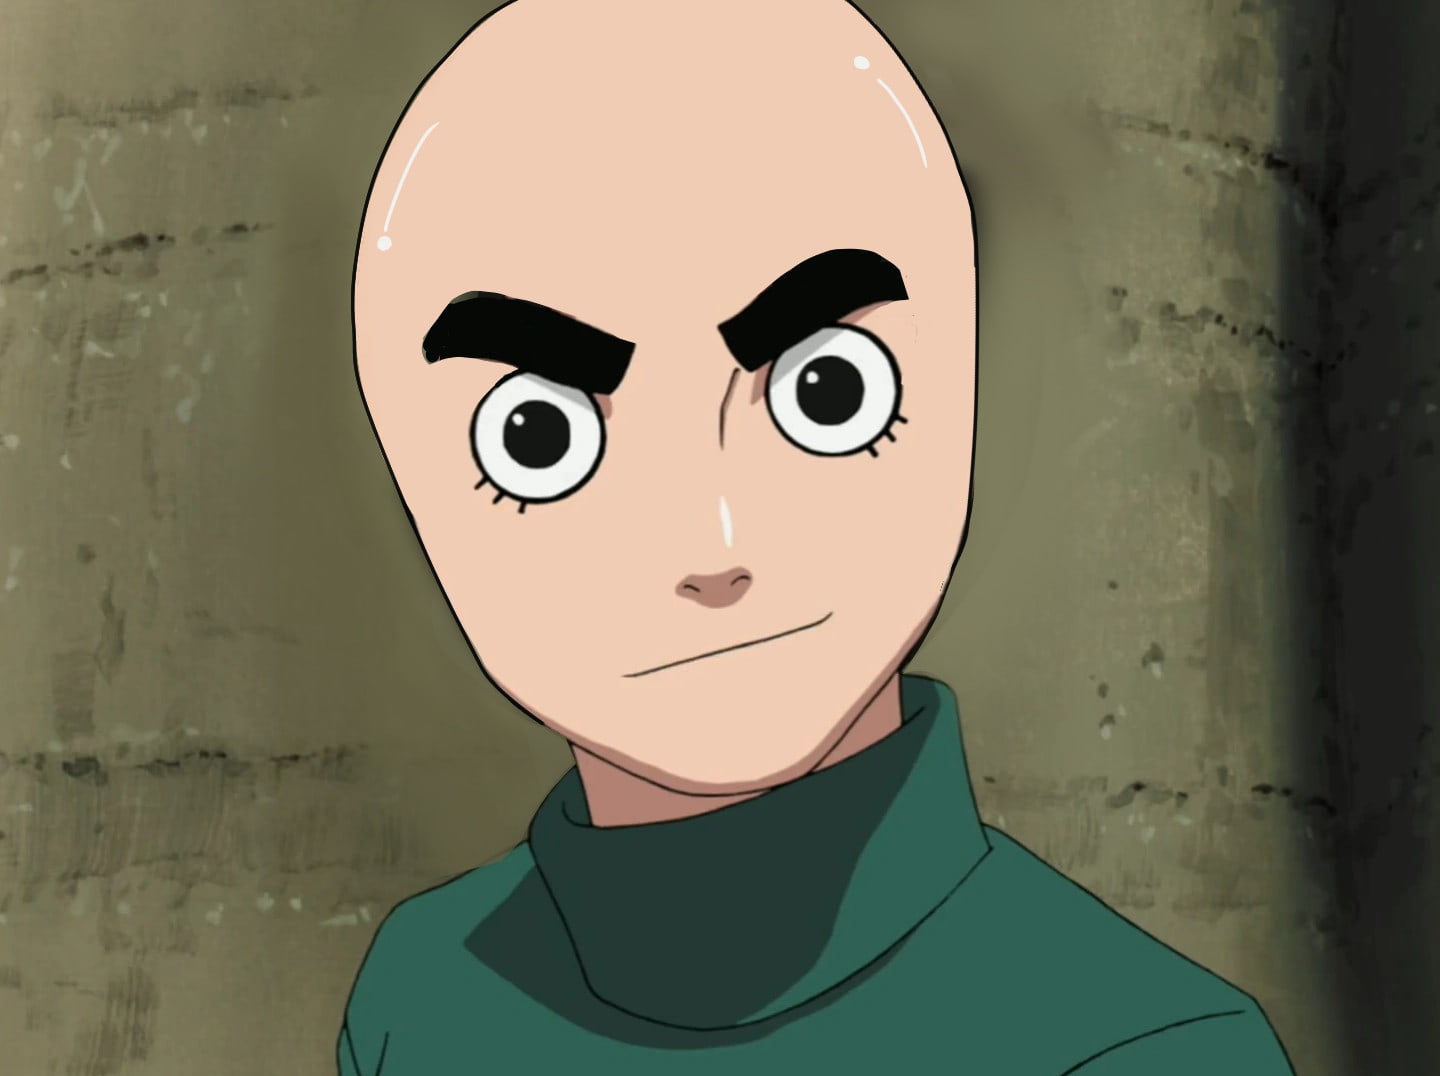 Bald anime characters